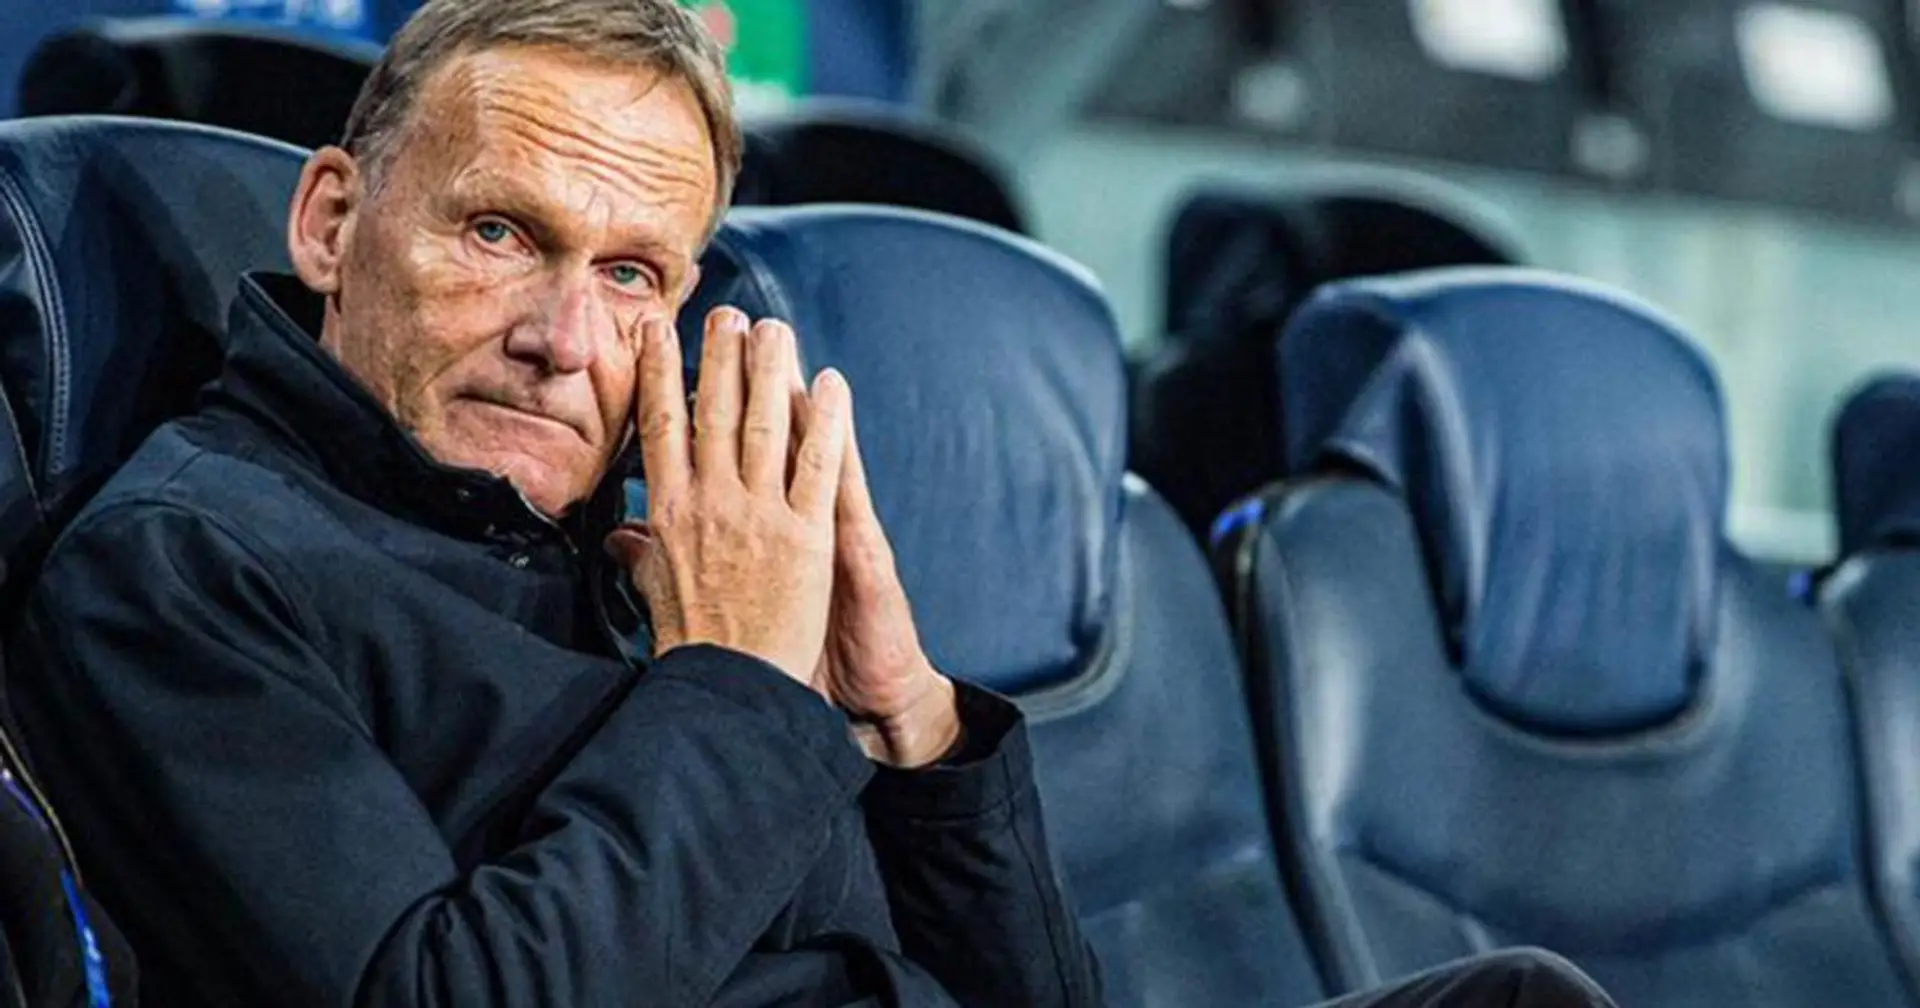 Watzke über die Kritik aus Wolfsburg: "Da würde ich die Klappe halten"